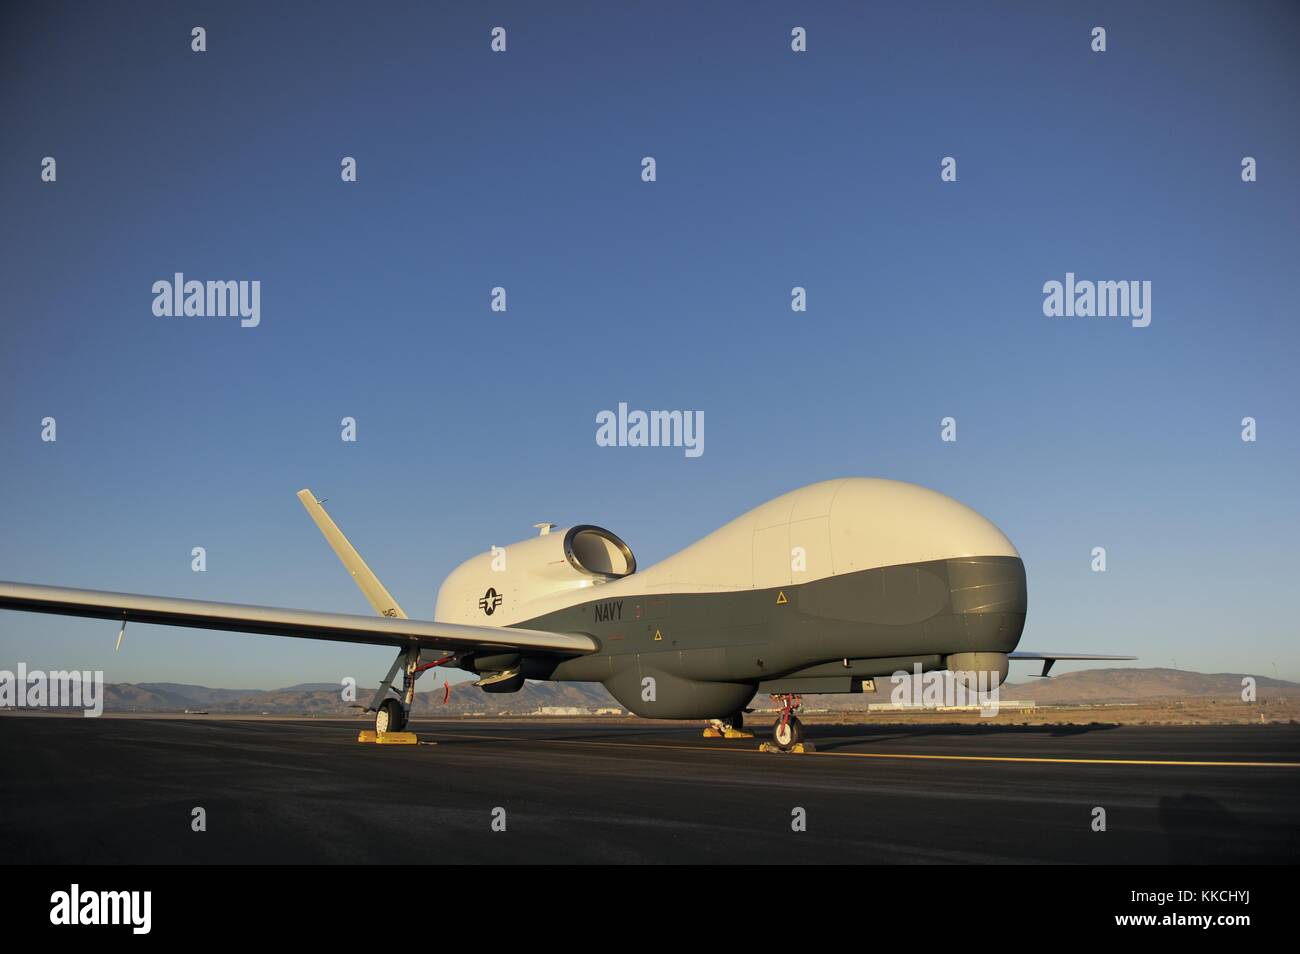 In questo file non datata foto, un rq-4 global hawk drone siede su un volo di linea, Washington, 2012. Immagine cortesia u.s. navy foto/us navy. Foto Stock